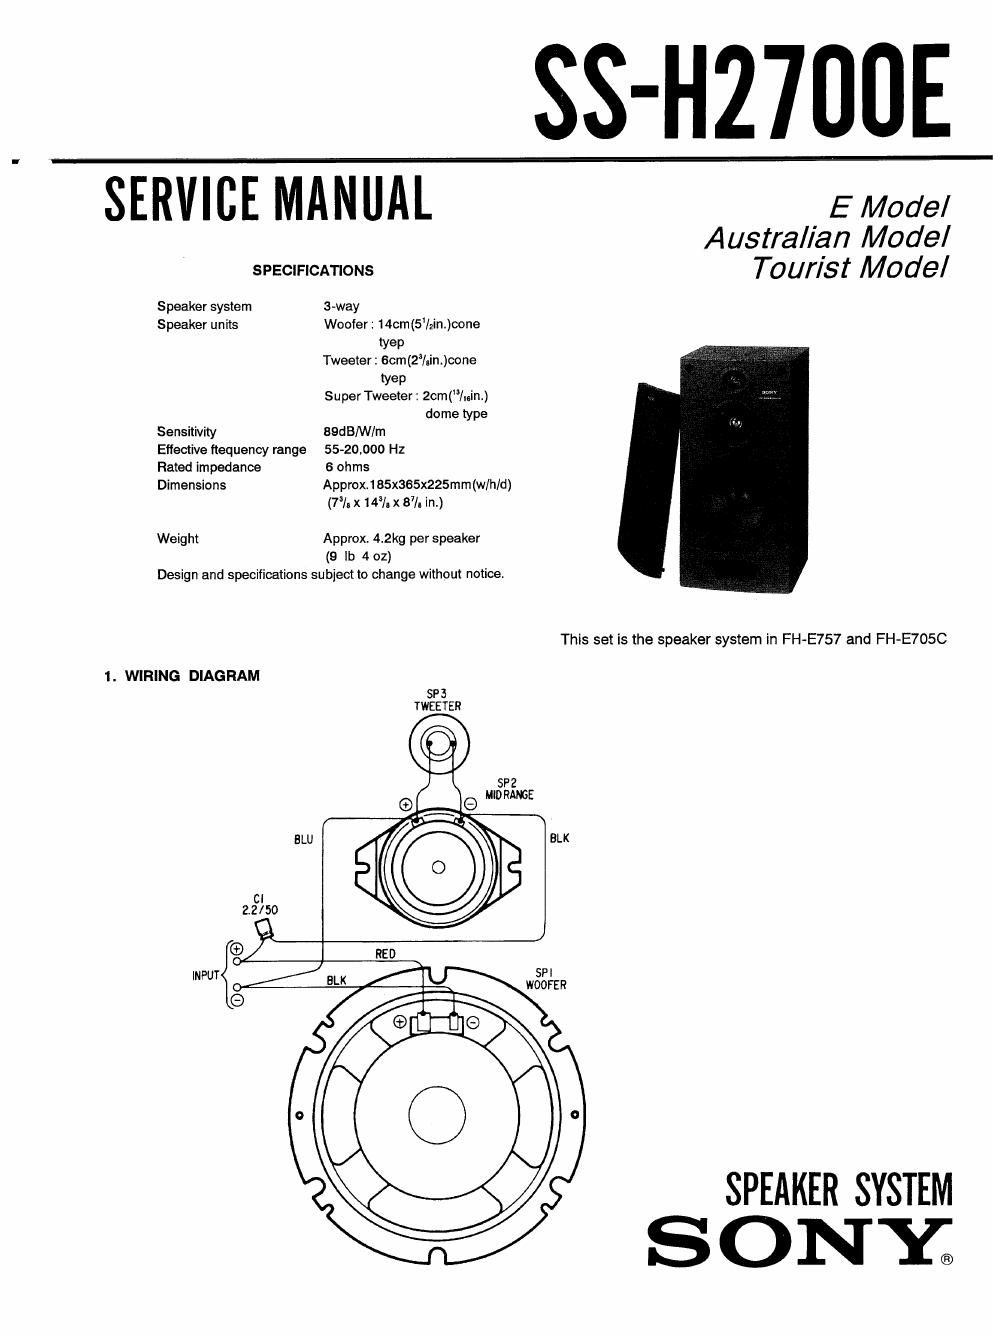 sony ss h 277 e service manual